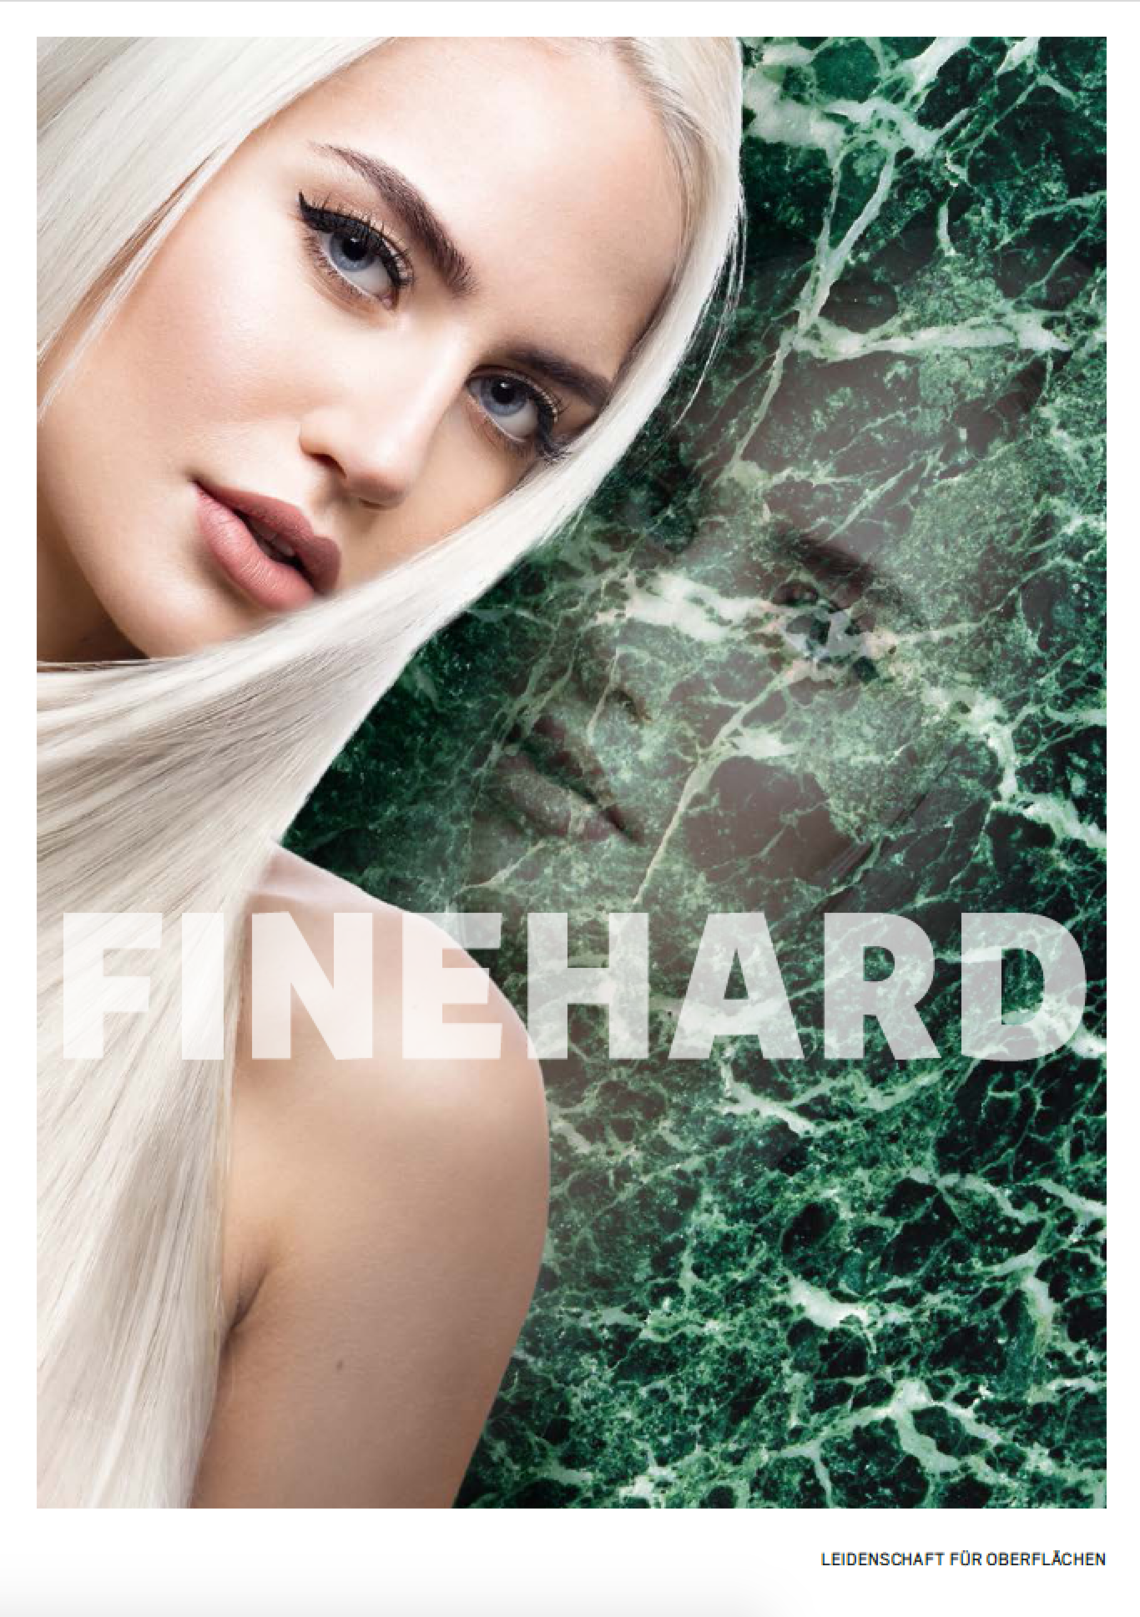 Titelbild der FINEHARD Hauptbroschüre. Grüne Marmorfläche mit Model.